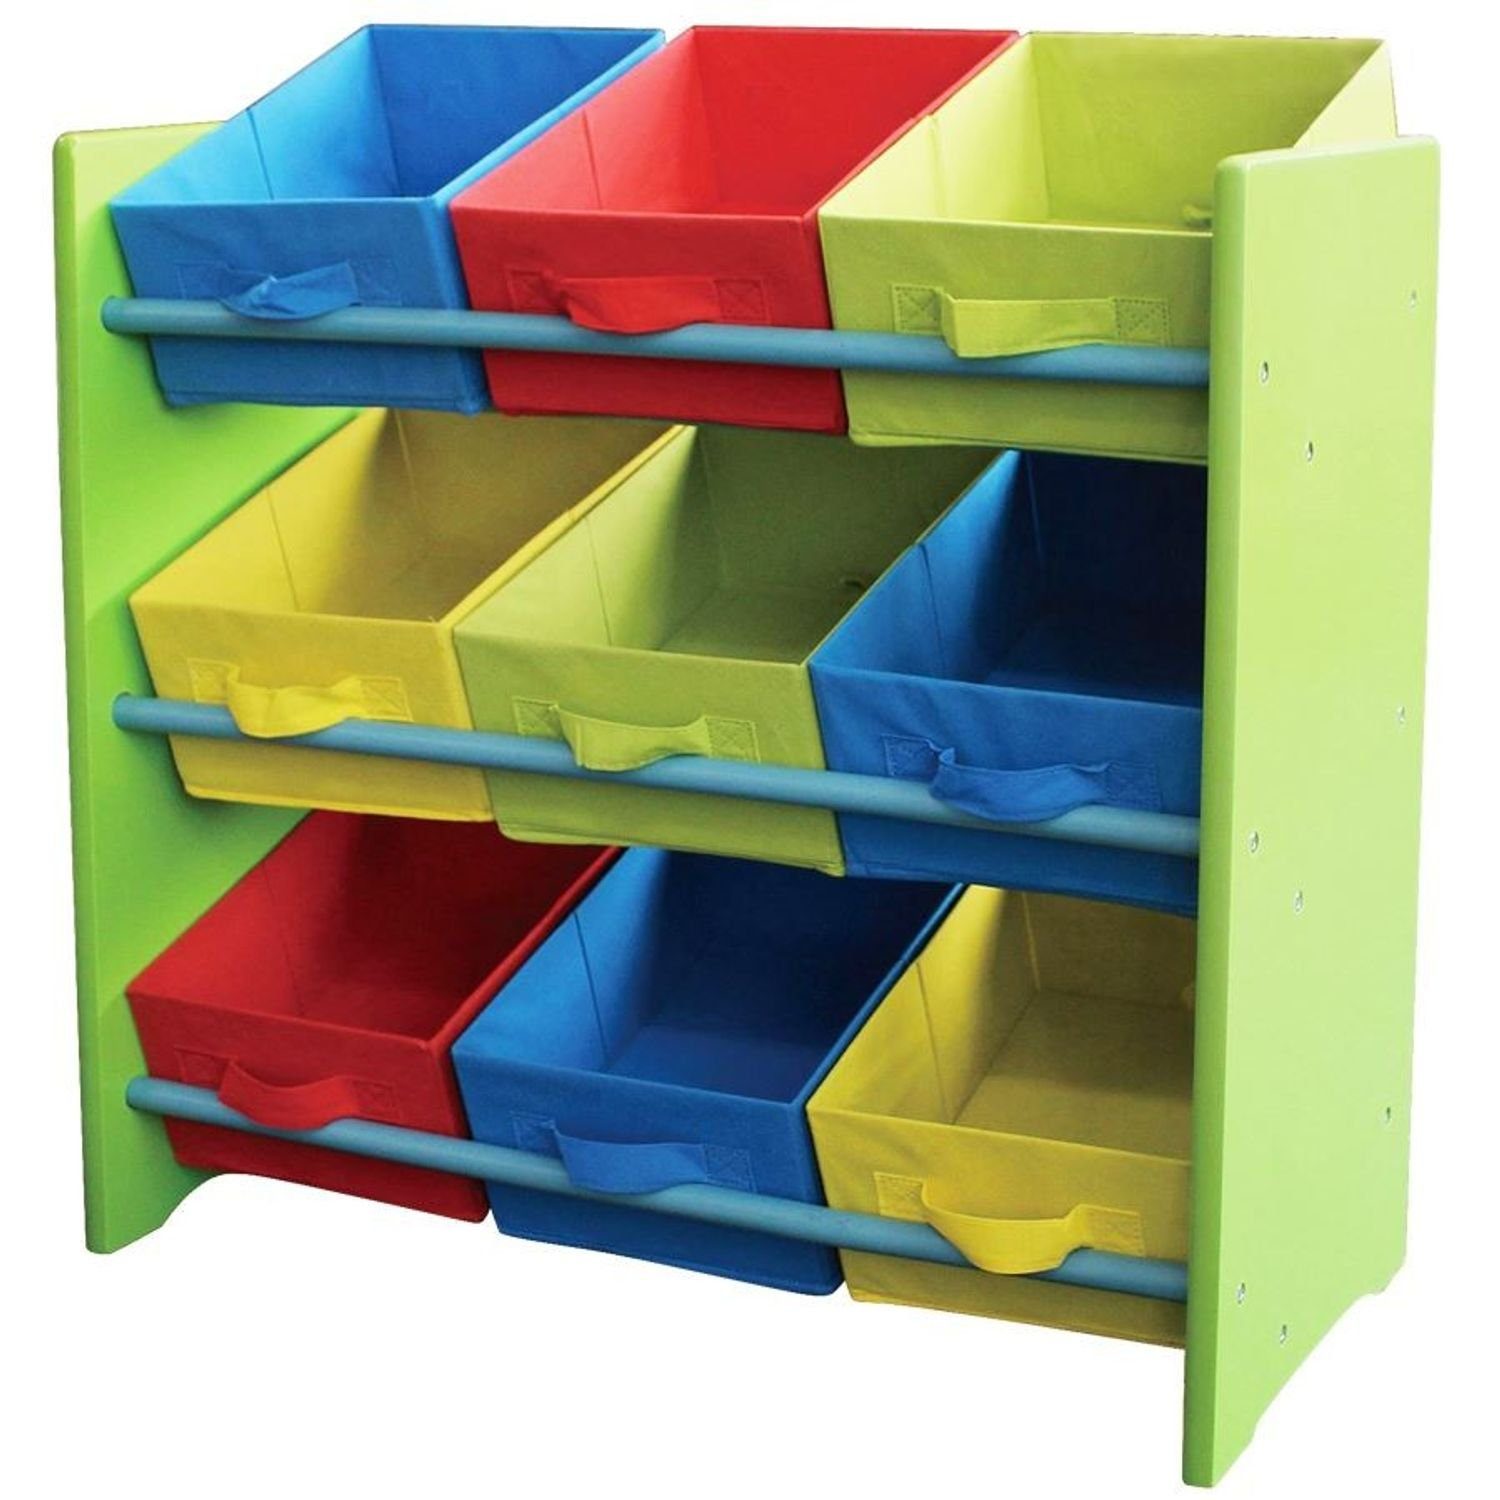 BURI Wandregal Kinderregal Kindermöbel Regal Ablage Spielzeugbox Spielzeugbox Kinderz 551 Farbe:grün (Seitenteil)